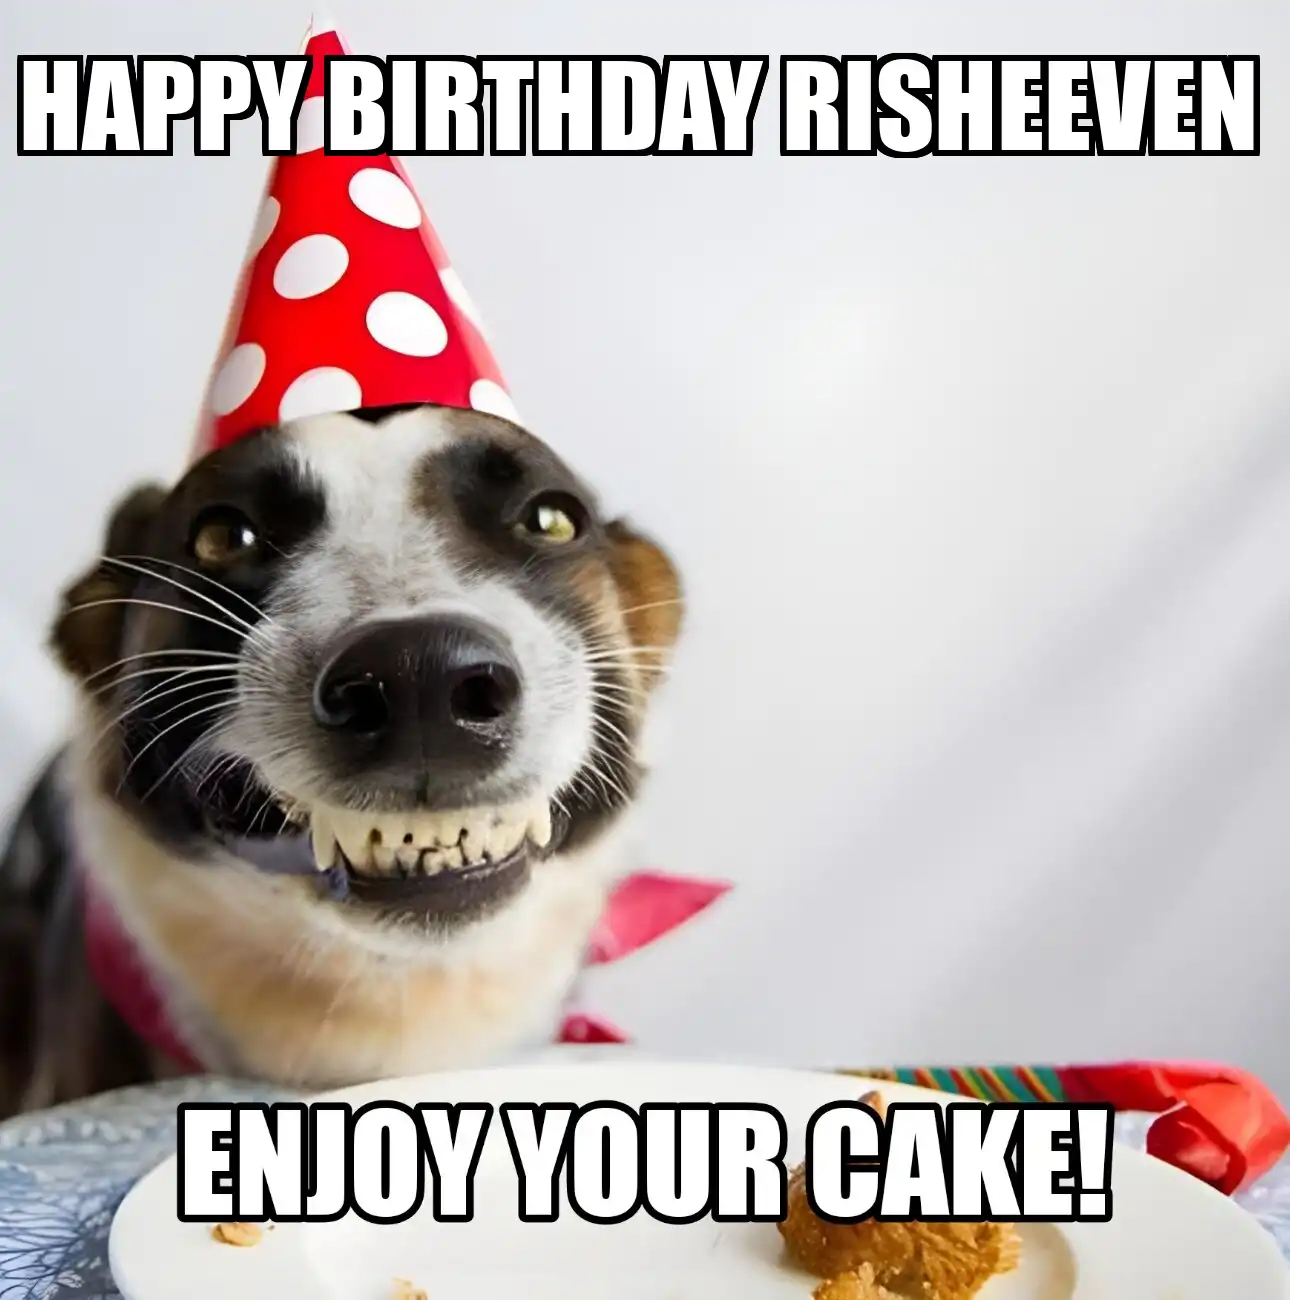 Happy Birthday Risheeven Enjoy Your Cake Dog Meme